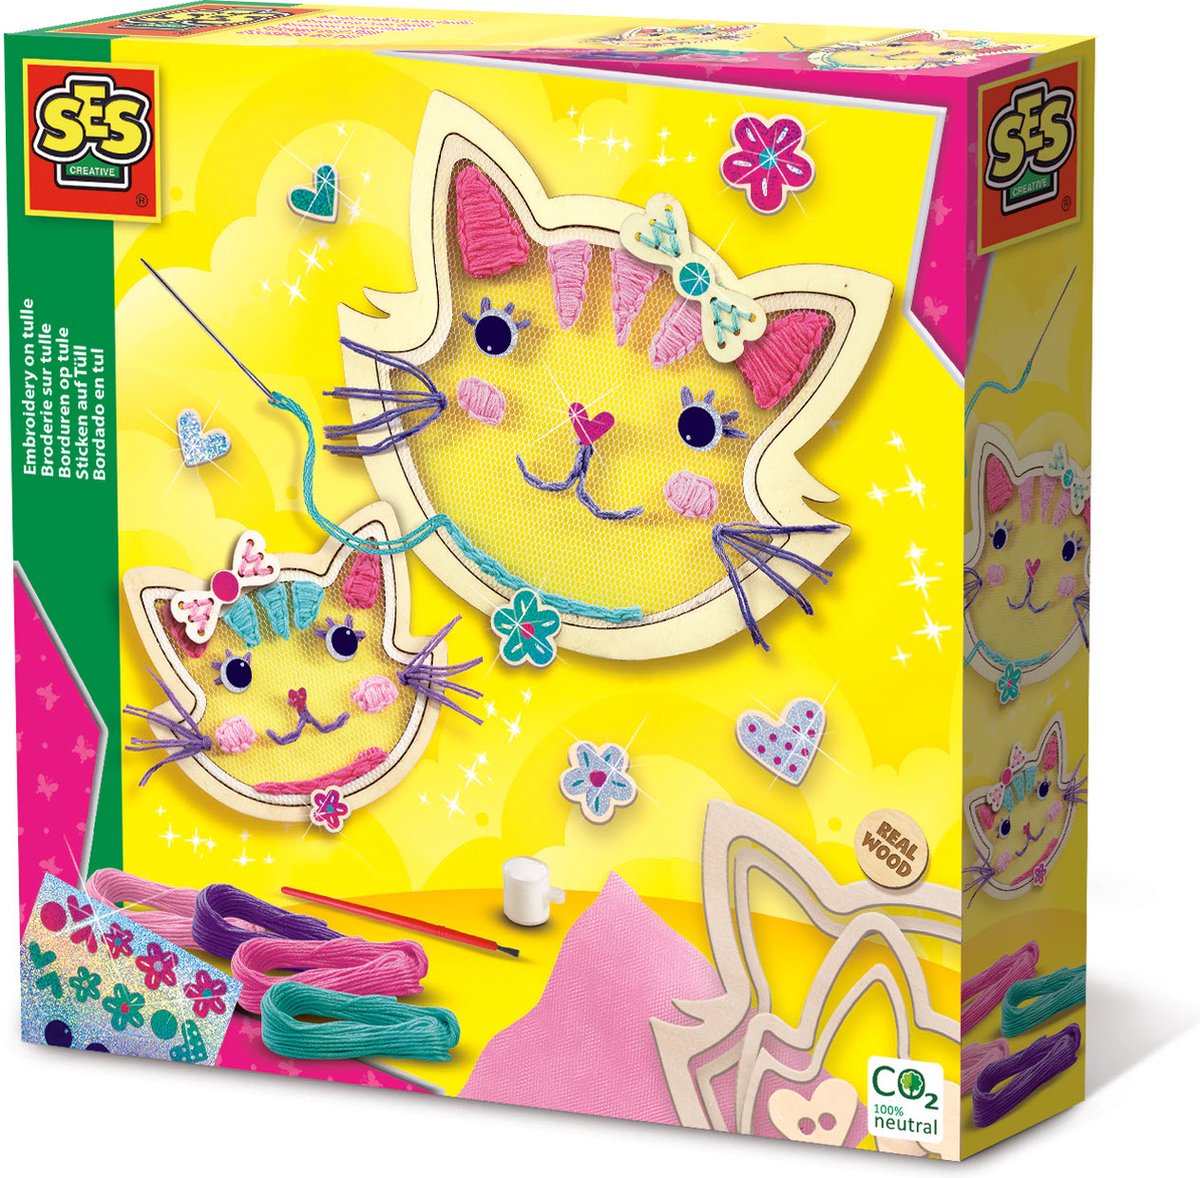 SES - Borduren op tule - katten thema - borduurringen van echt hout - 4 kleuren borduurgaren - met glitter stickers voor de details - SES